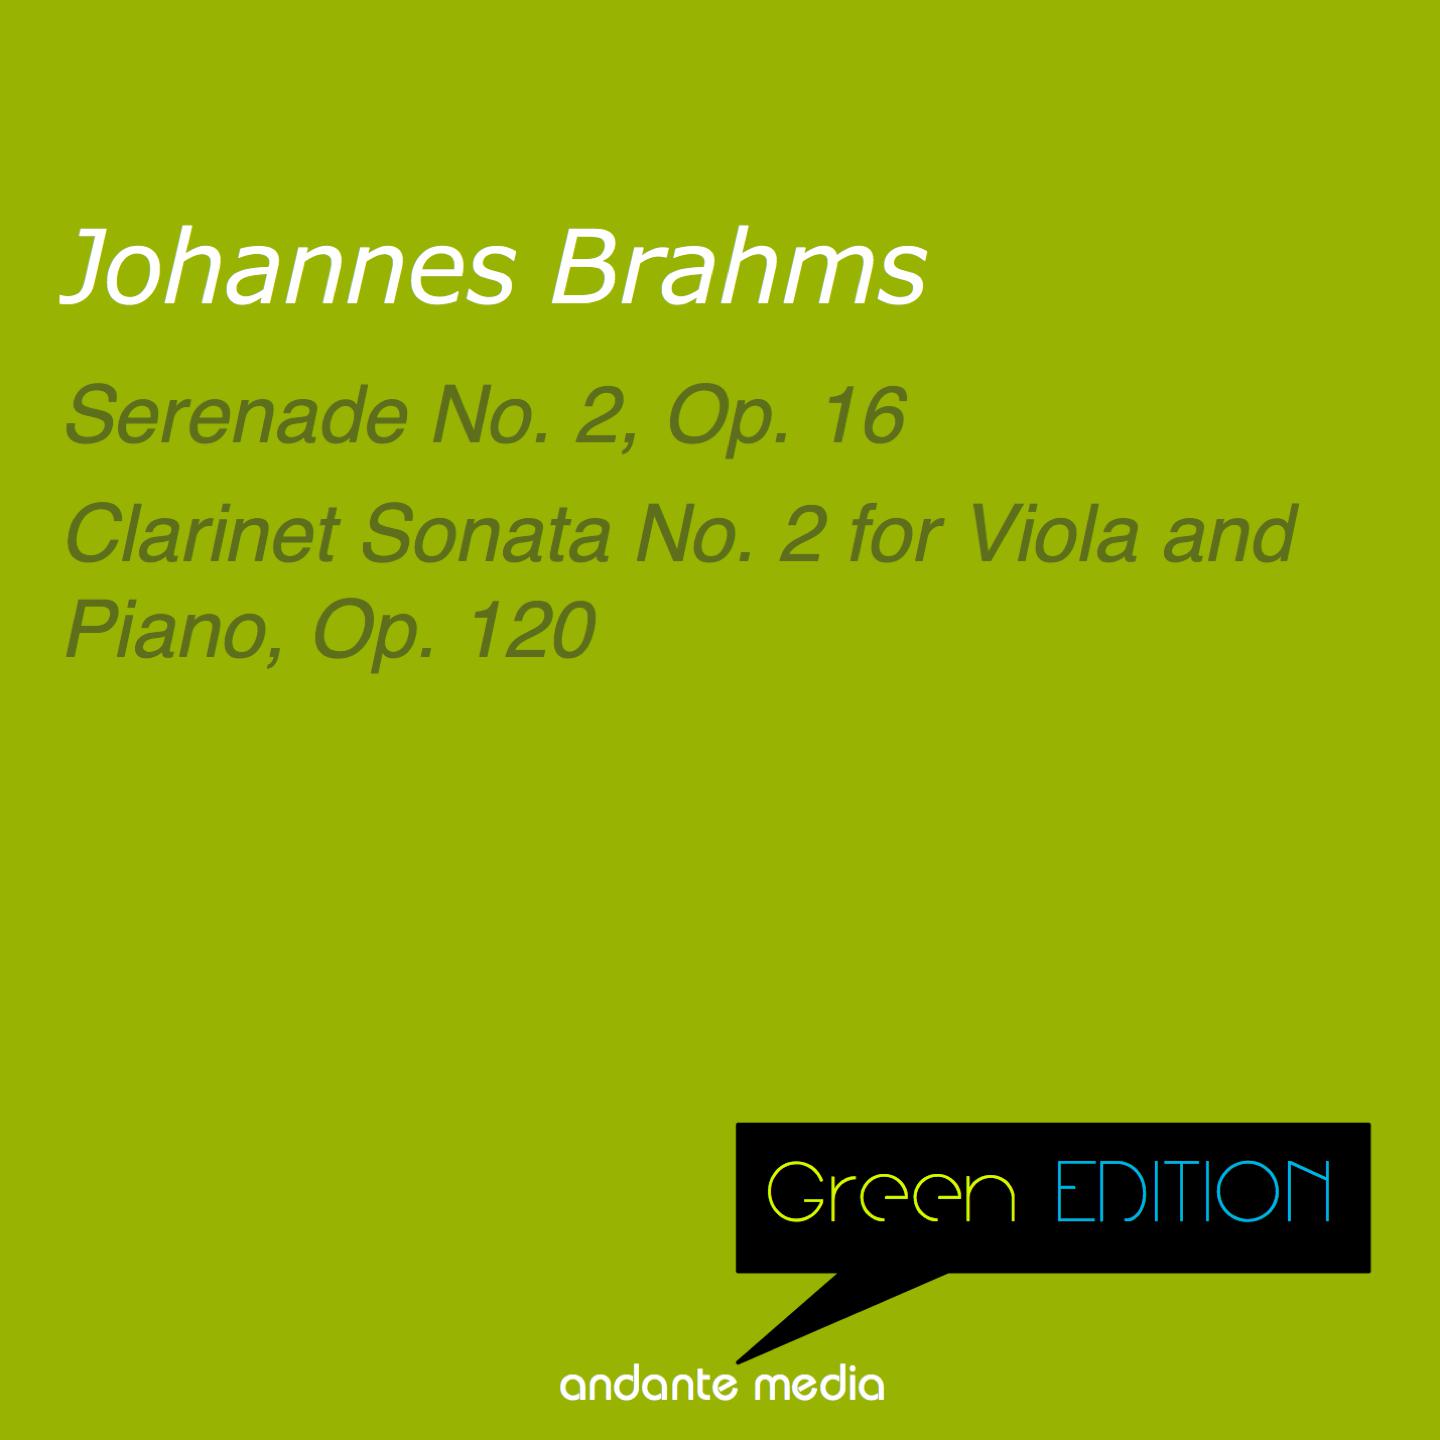 Marga Scheurich - Clarinet Sonata No. 2 for Viola and Piano in E-Flat Major, Op. 120: II. Allegro appassionato